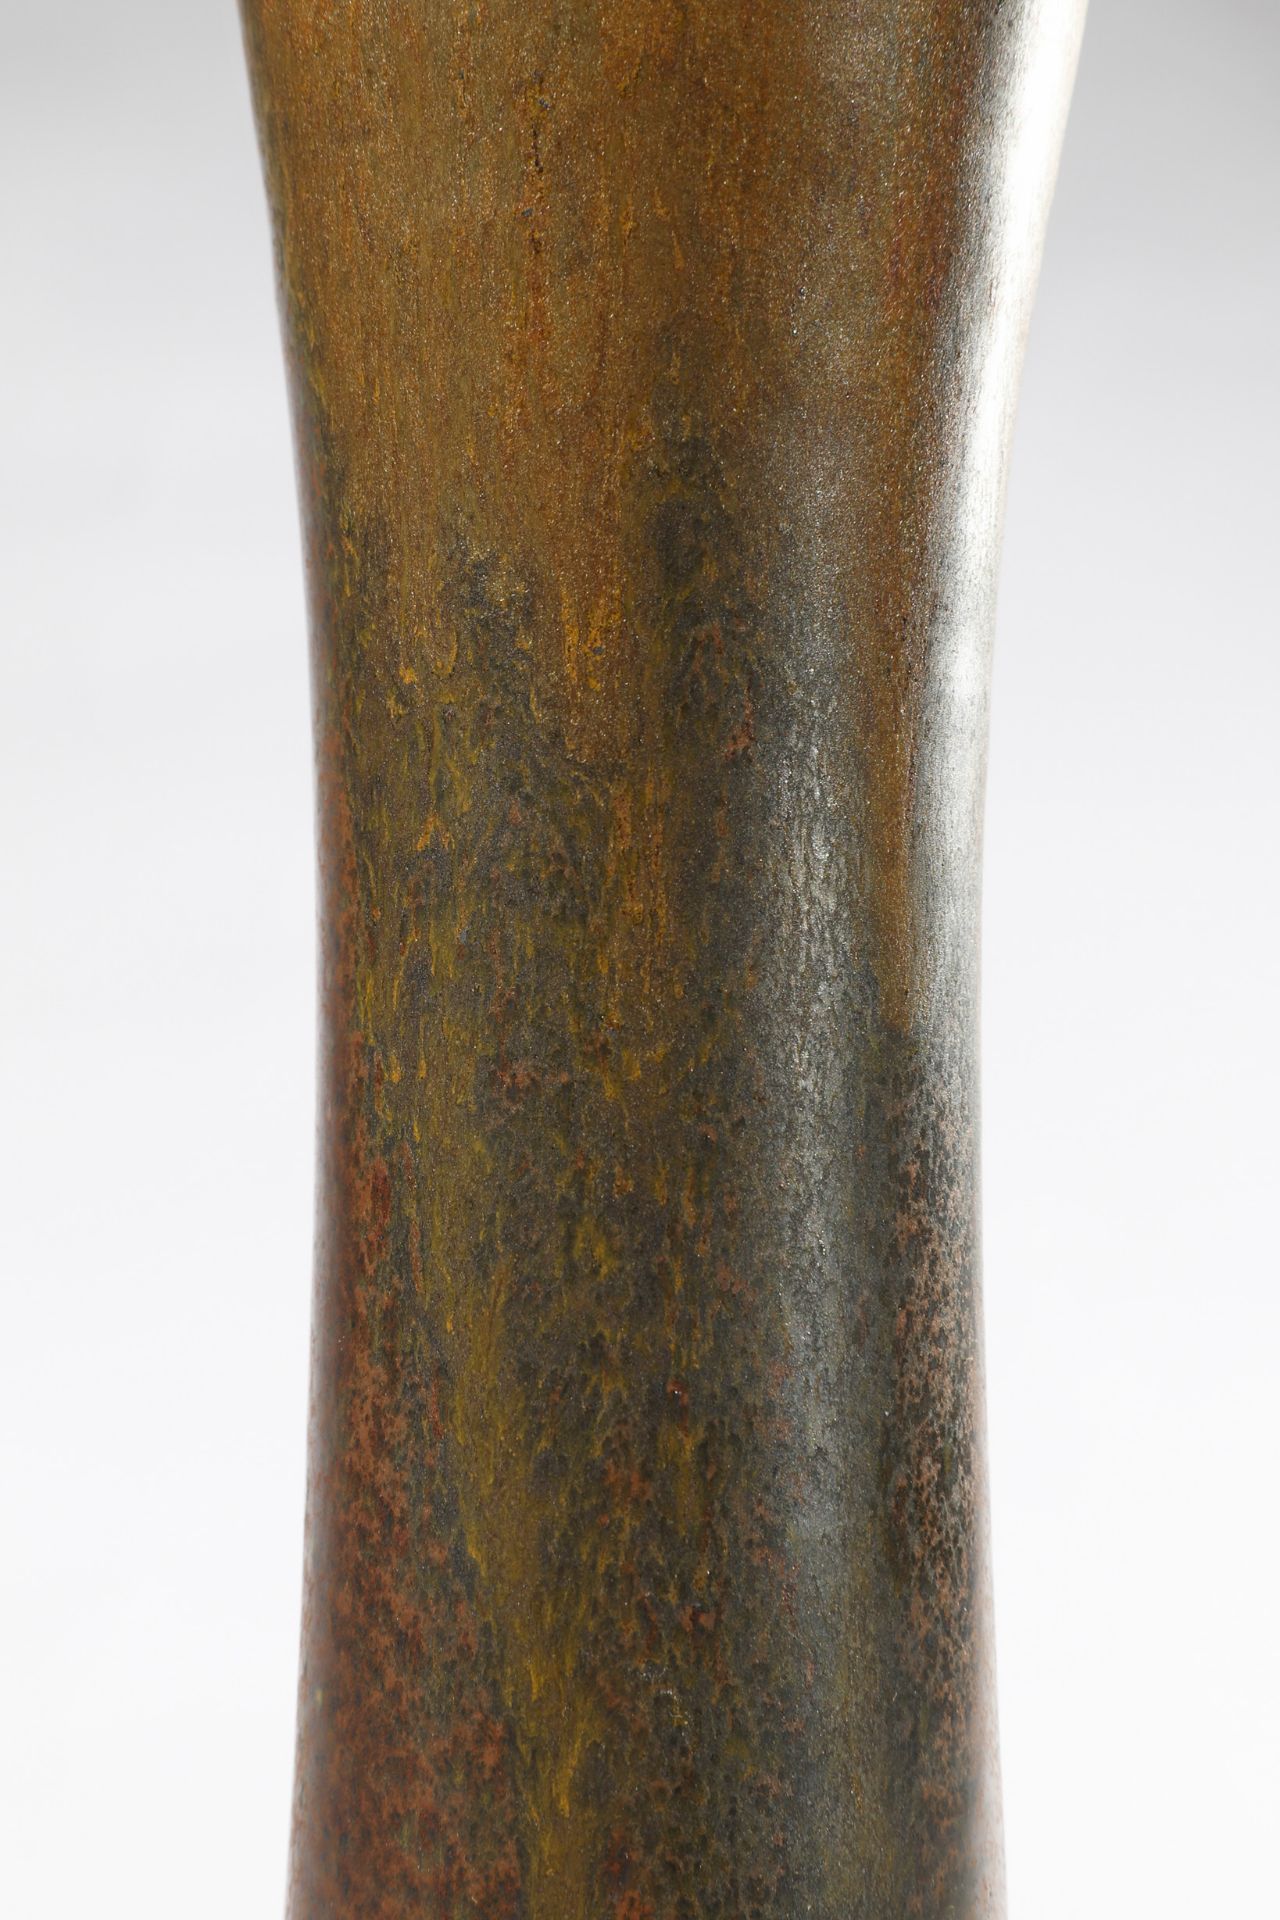 Ursula Scheid, Large Vase - Bild 4 aus 5